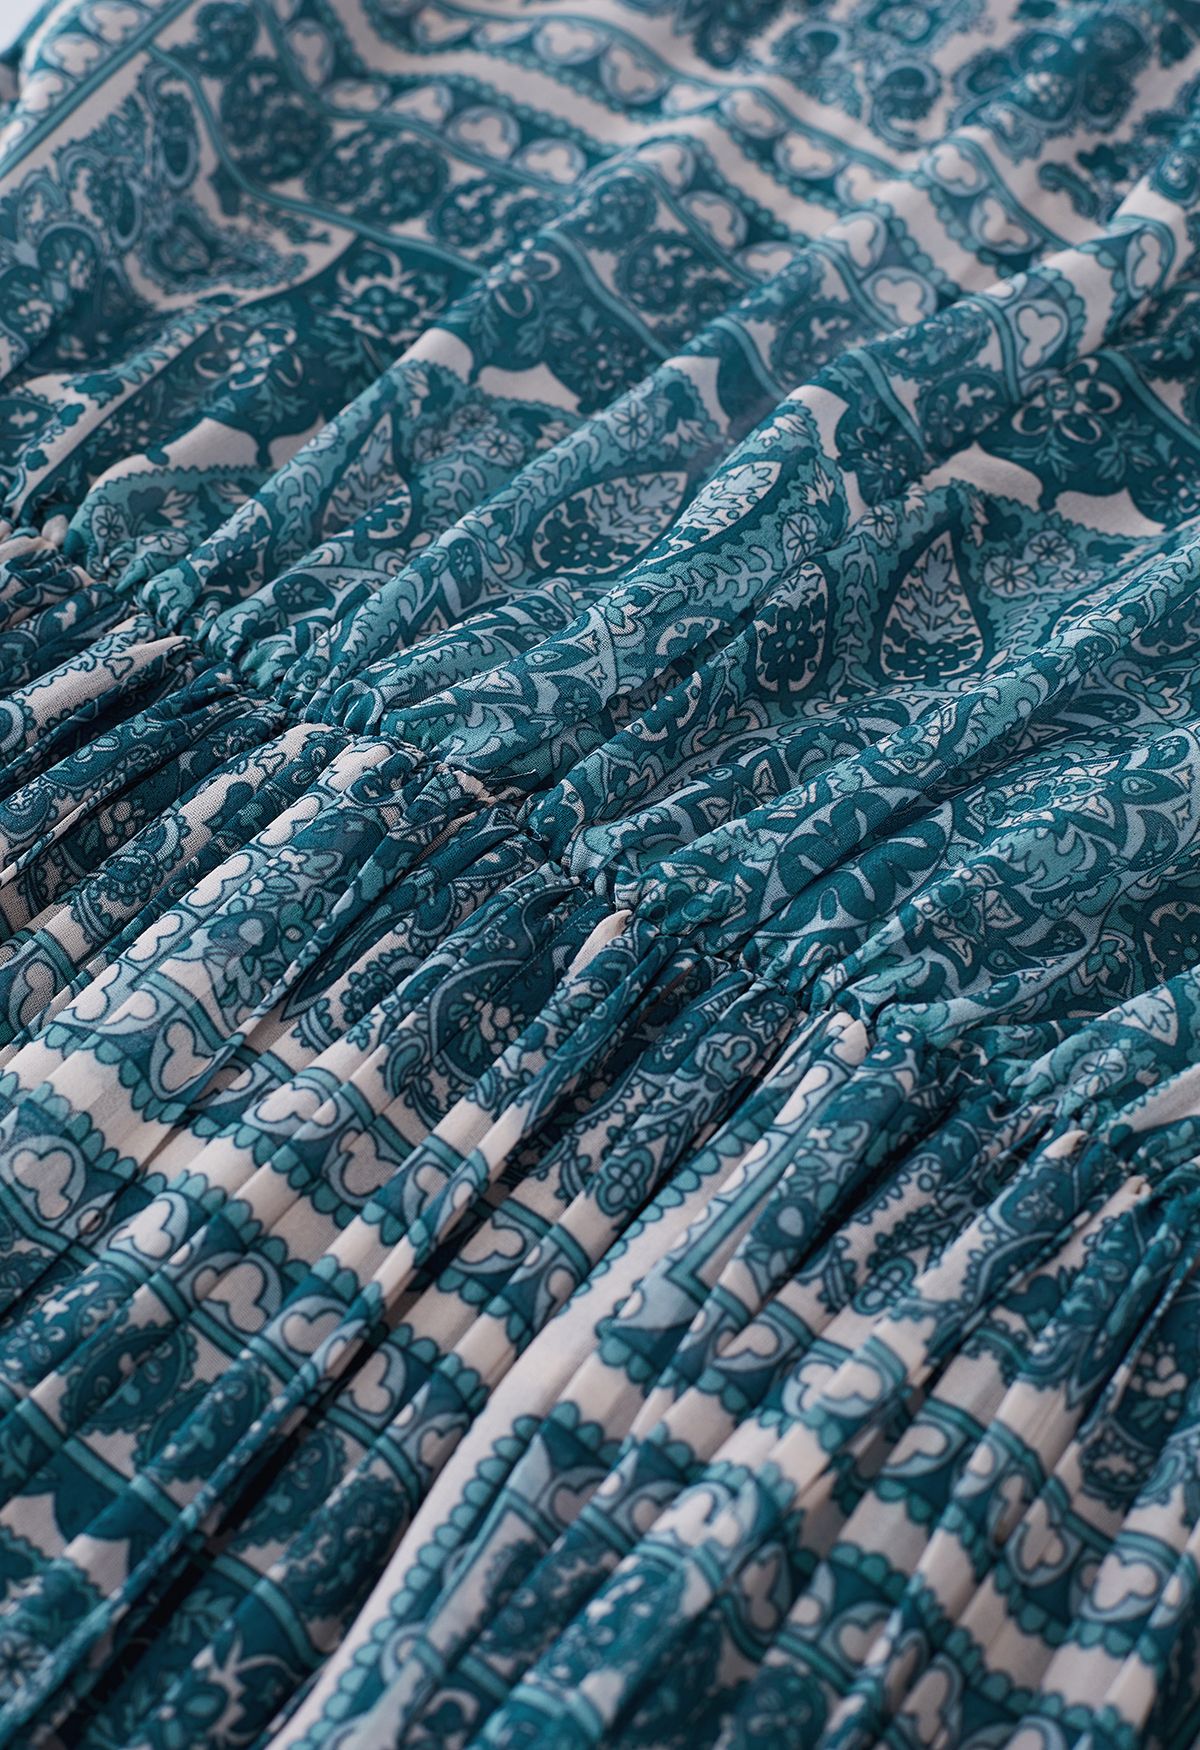 فستان بوهو بيزلي متوسط الطول من الشيفون بطيات باللون الأزرق المخضر